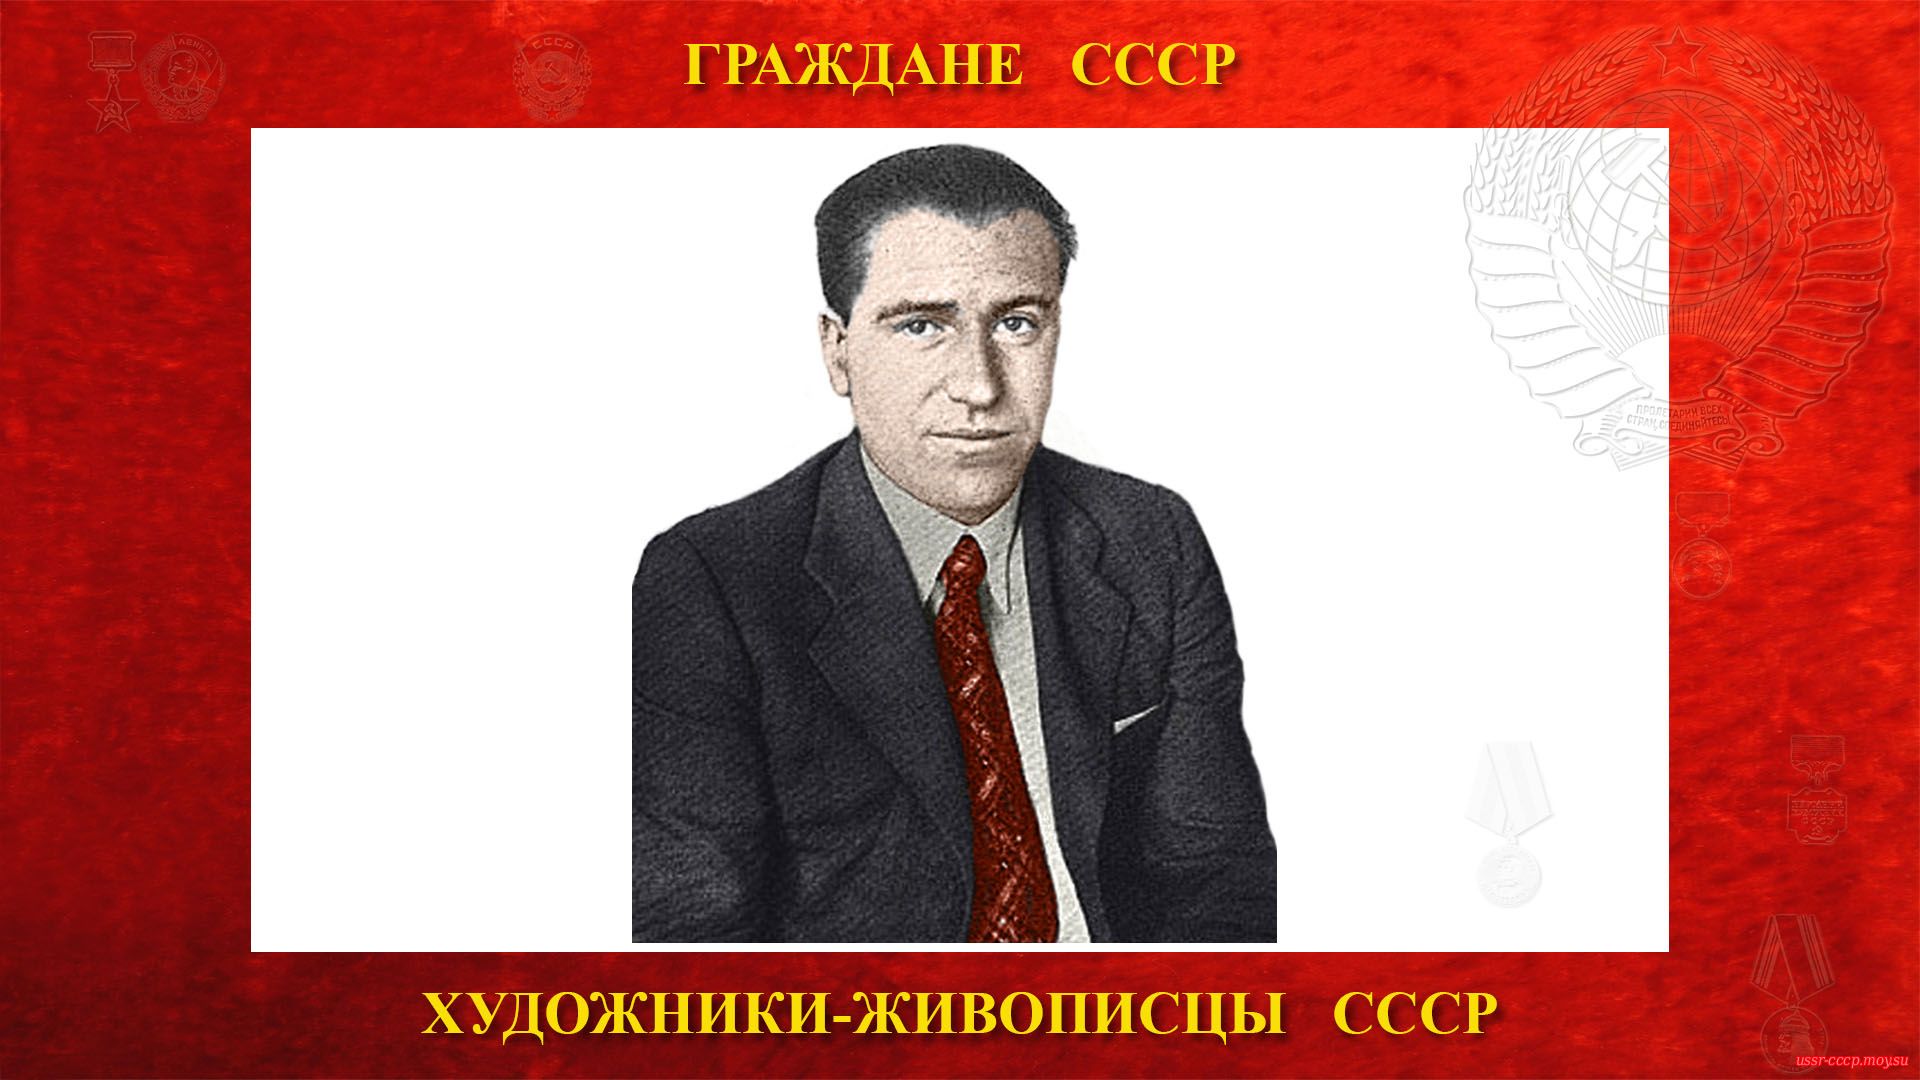 Дейнека Александр Александрович — Советский живописец — монументалист и график СССР